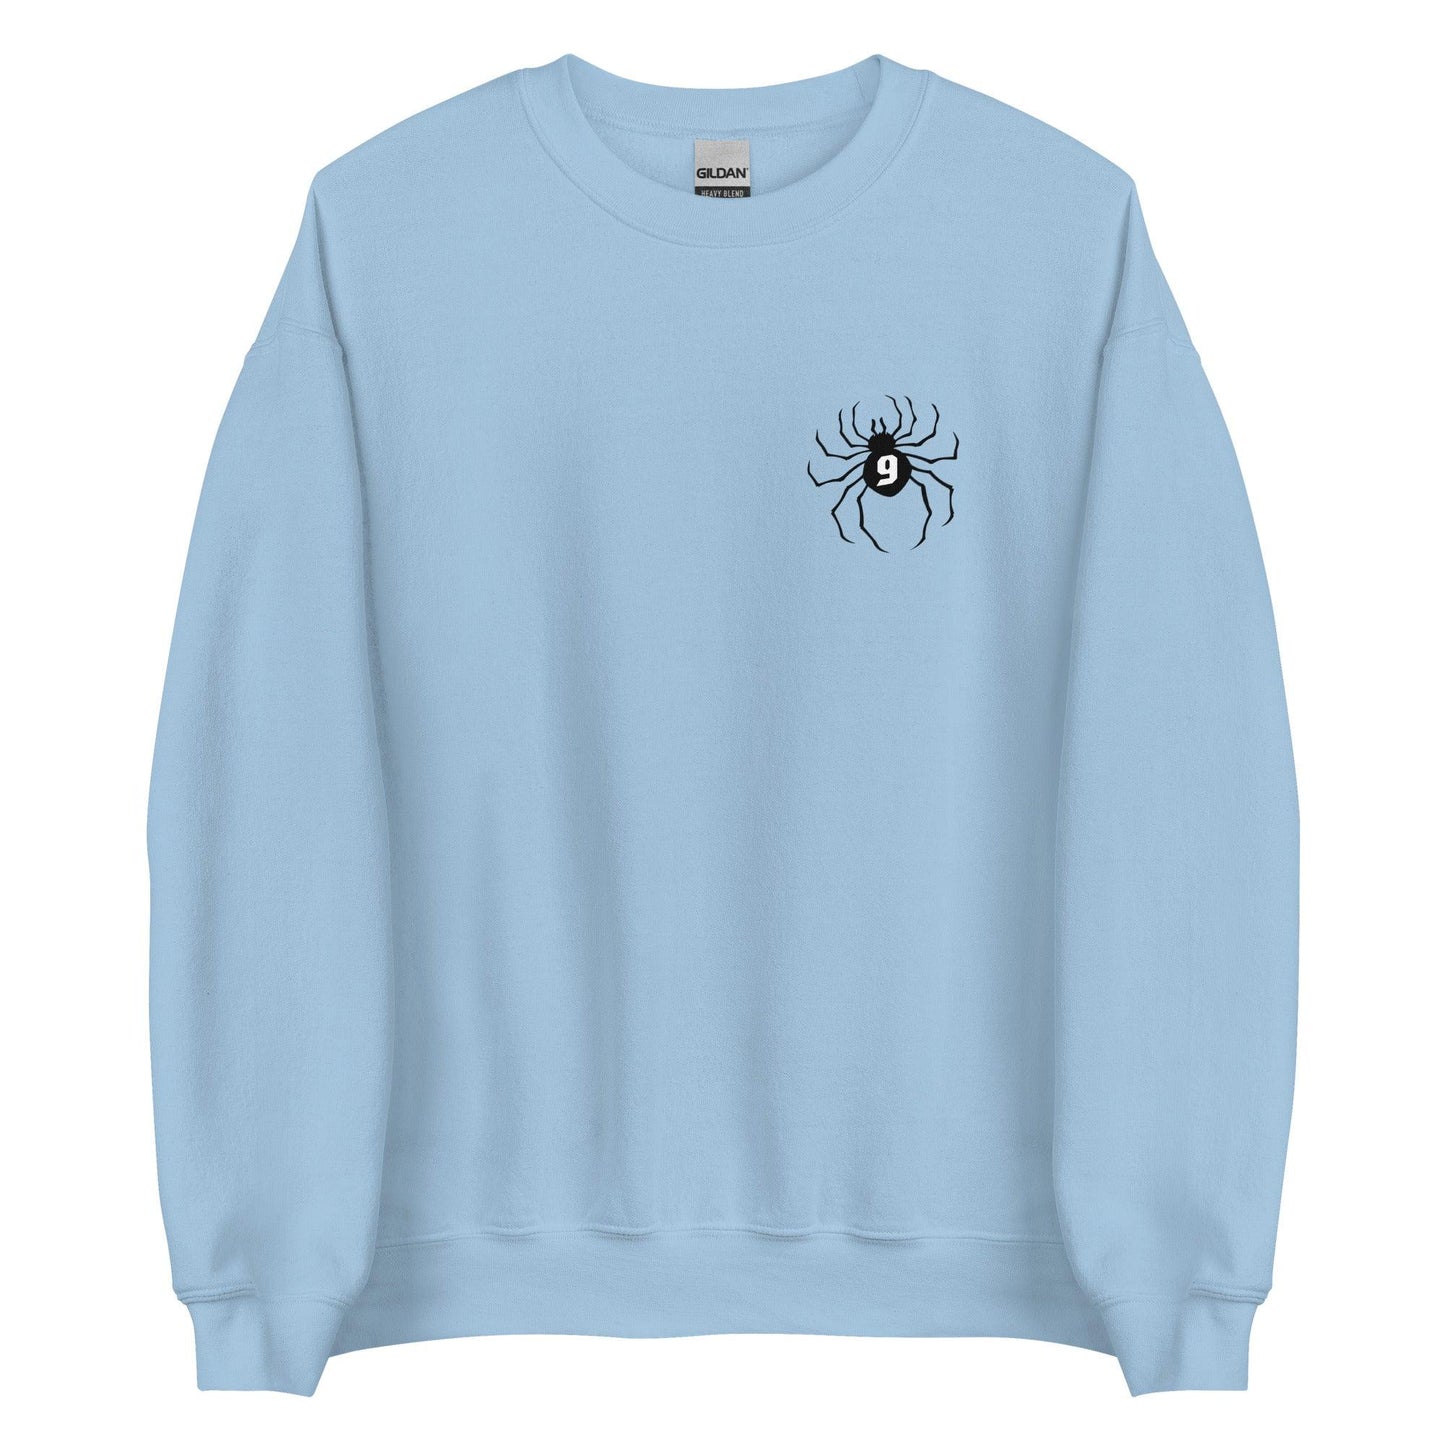 Marquis Dendy "Spider" Sweatshirt - Fan Arch